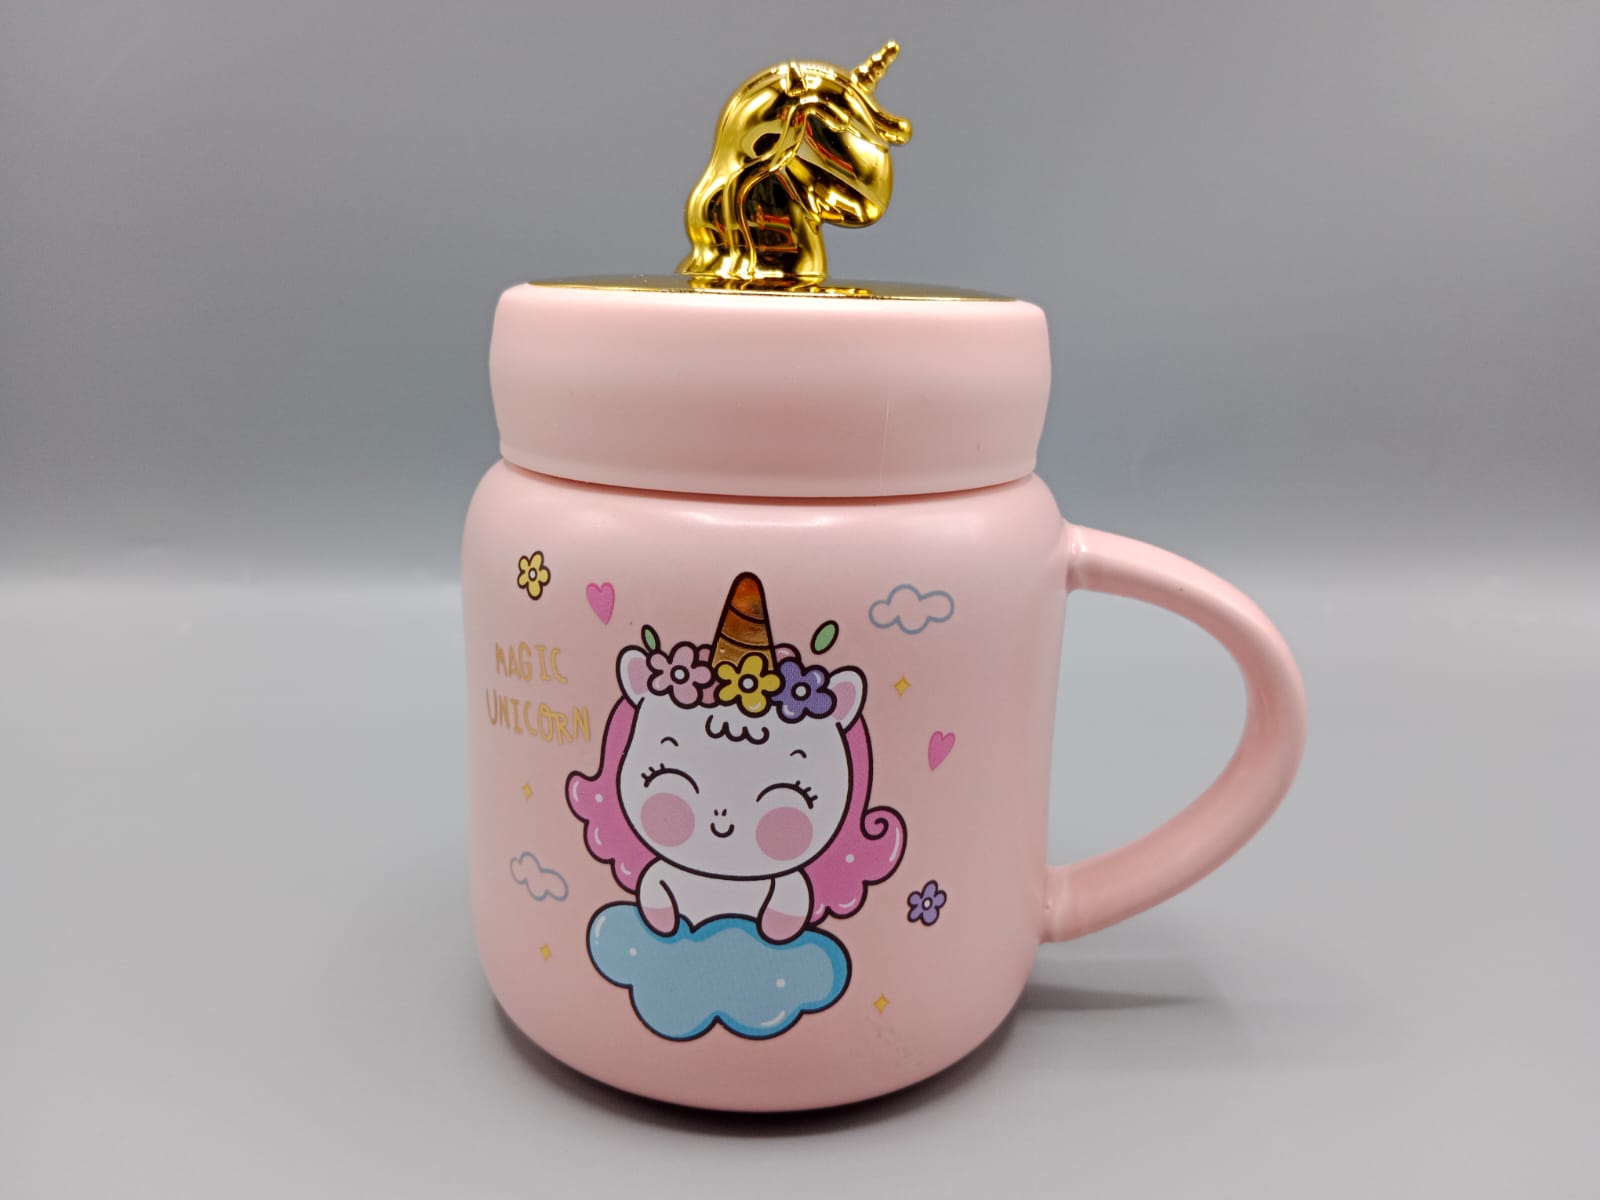 Unicorn Ceramic Mug With Unicorn Figure on Lid (G-29C)